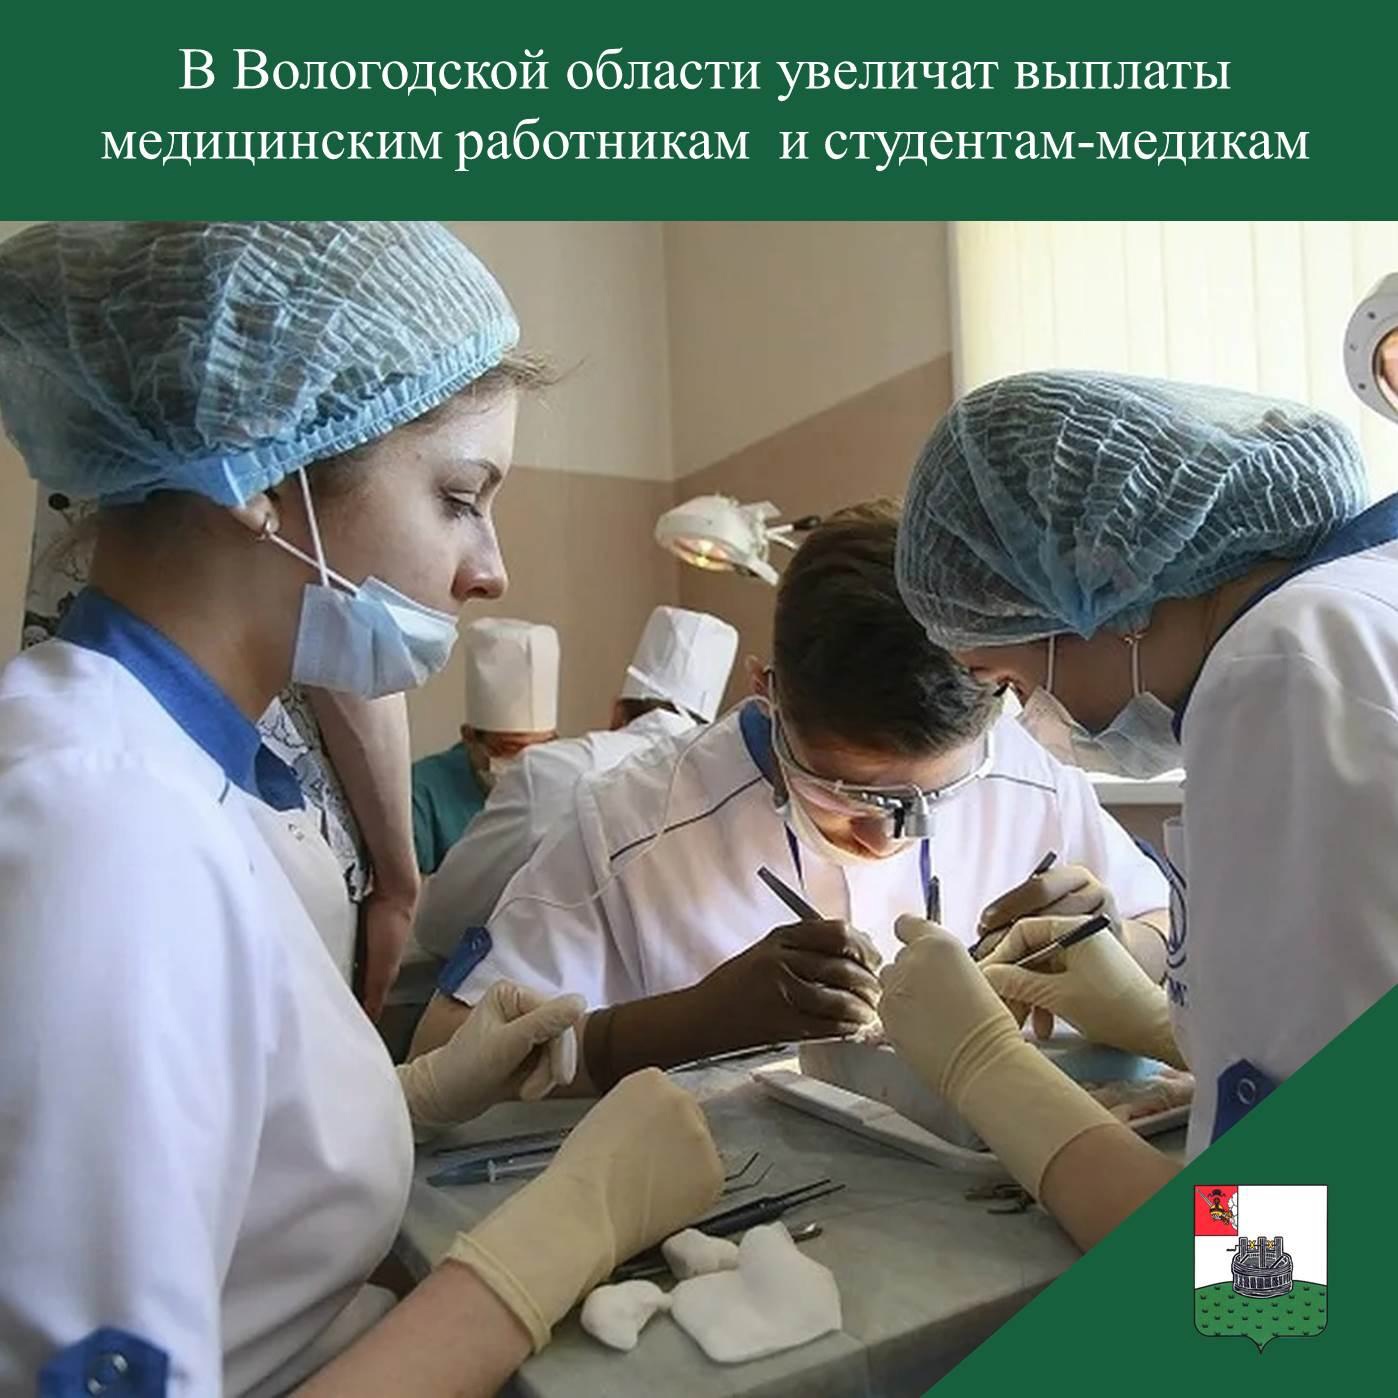 В Вологодской области увеличат выплаты медицинским работникам и студентам-медикам.